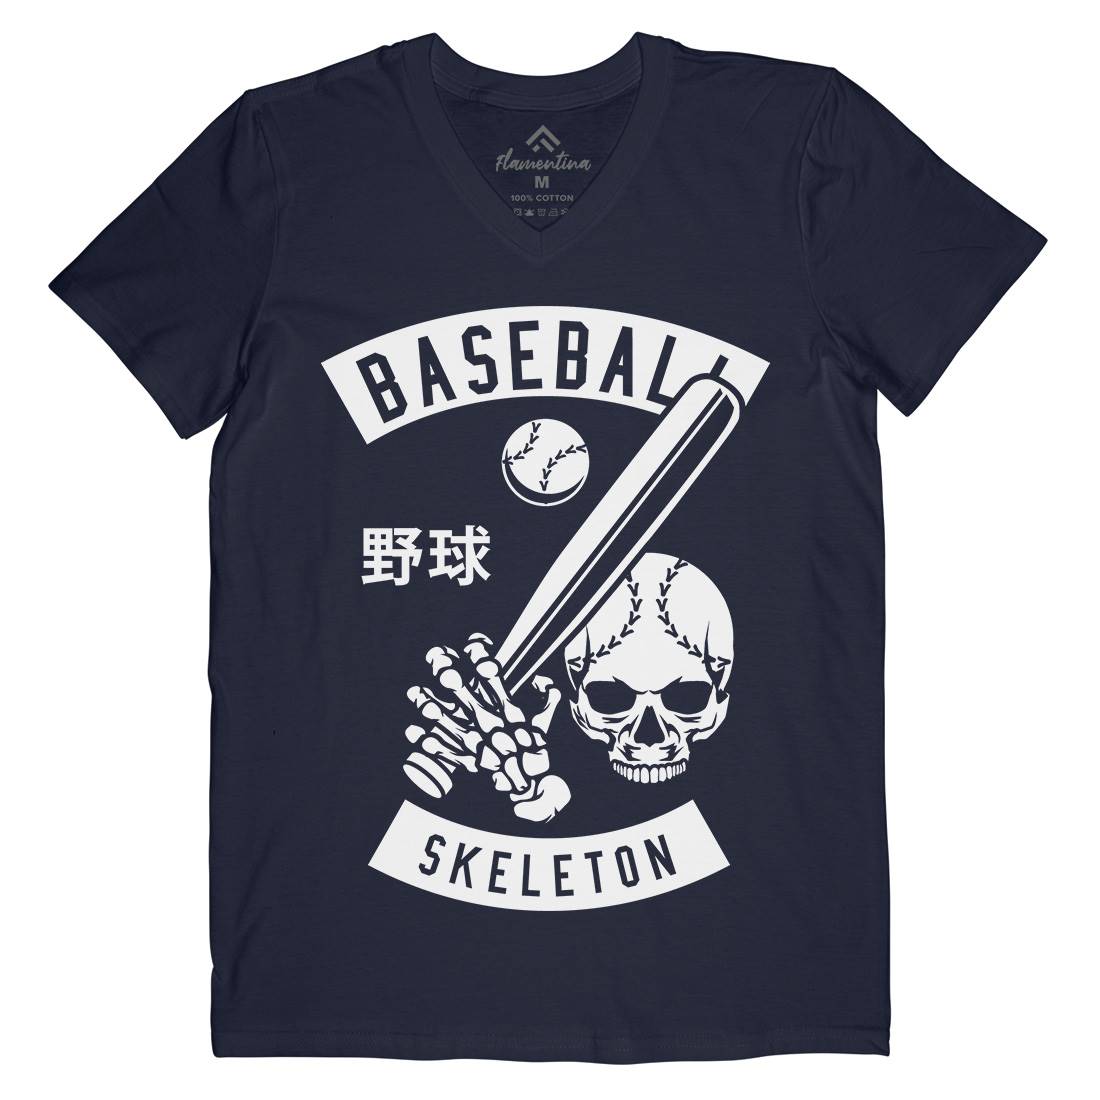 Baseball Skeleton Mens Organic V-Neck T-Shirt Sport B489